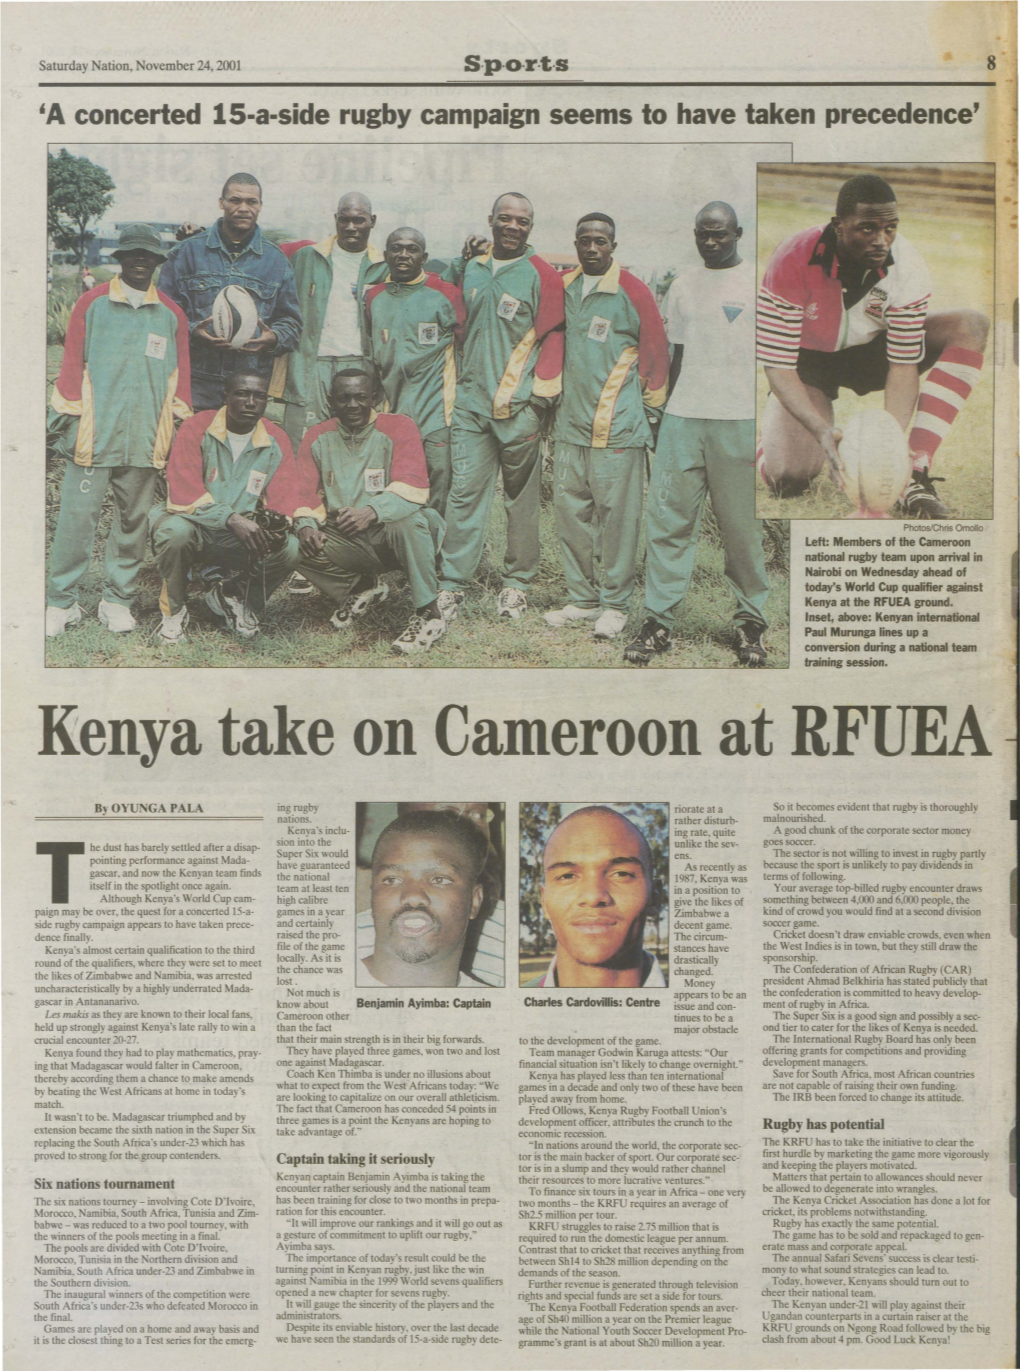 Kenya Take on Cameroon at RFUEA